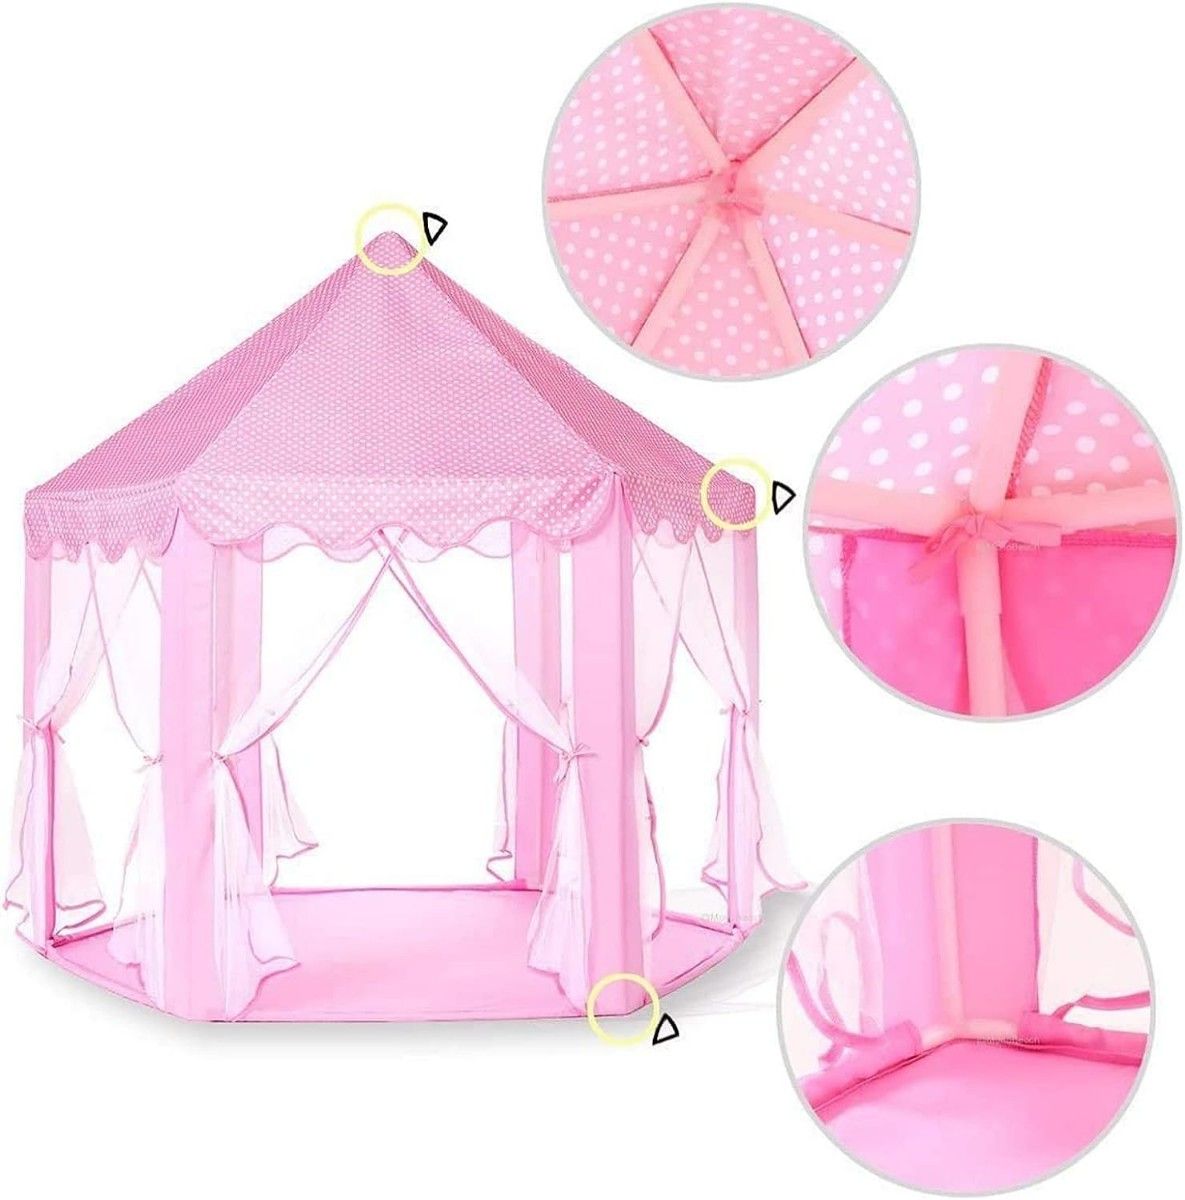 キッズテント 女の子 おもちゃ ハウス 可愛い 子供用 テント ハウス プリンセス 城型 折り畳み式 (ピンク)